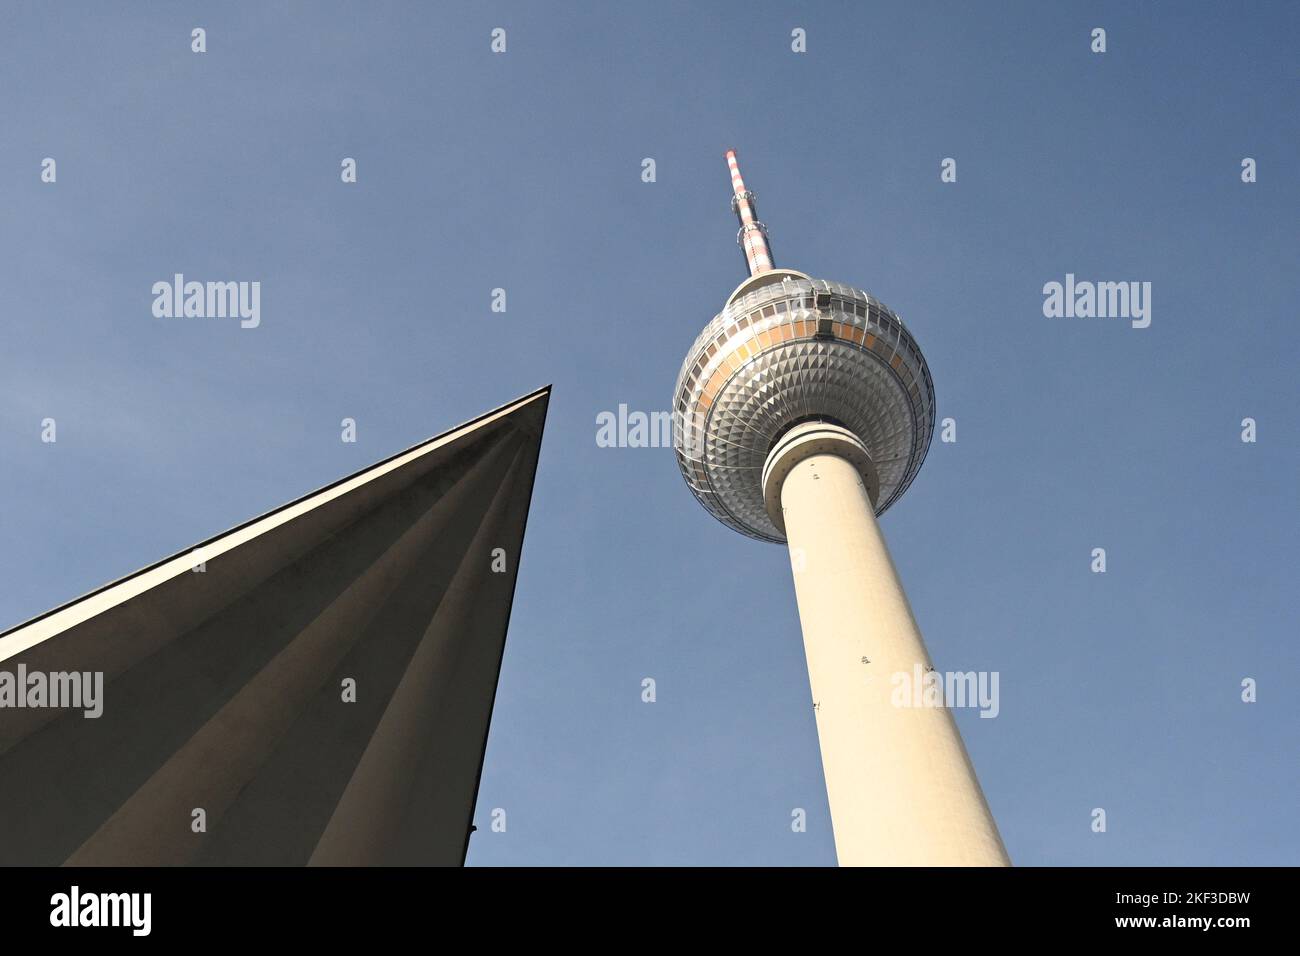 La tour de télévision situé sur la place Alexanderplatz à Berlin, Allemagne. Banque D'Images